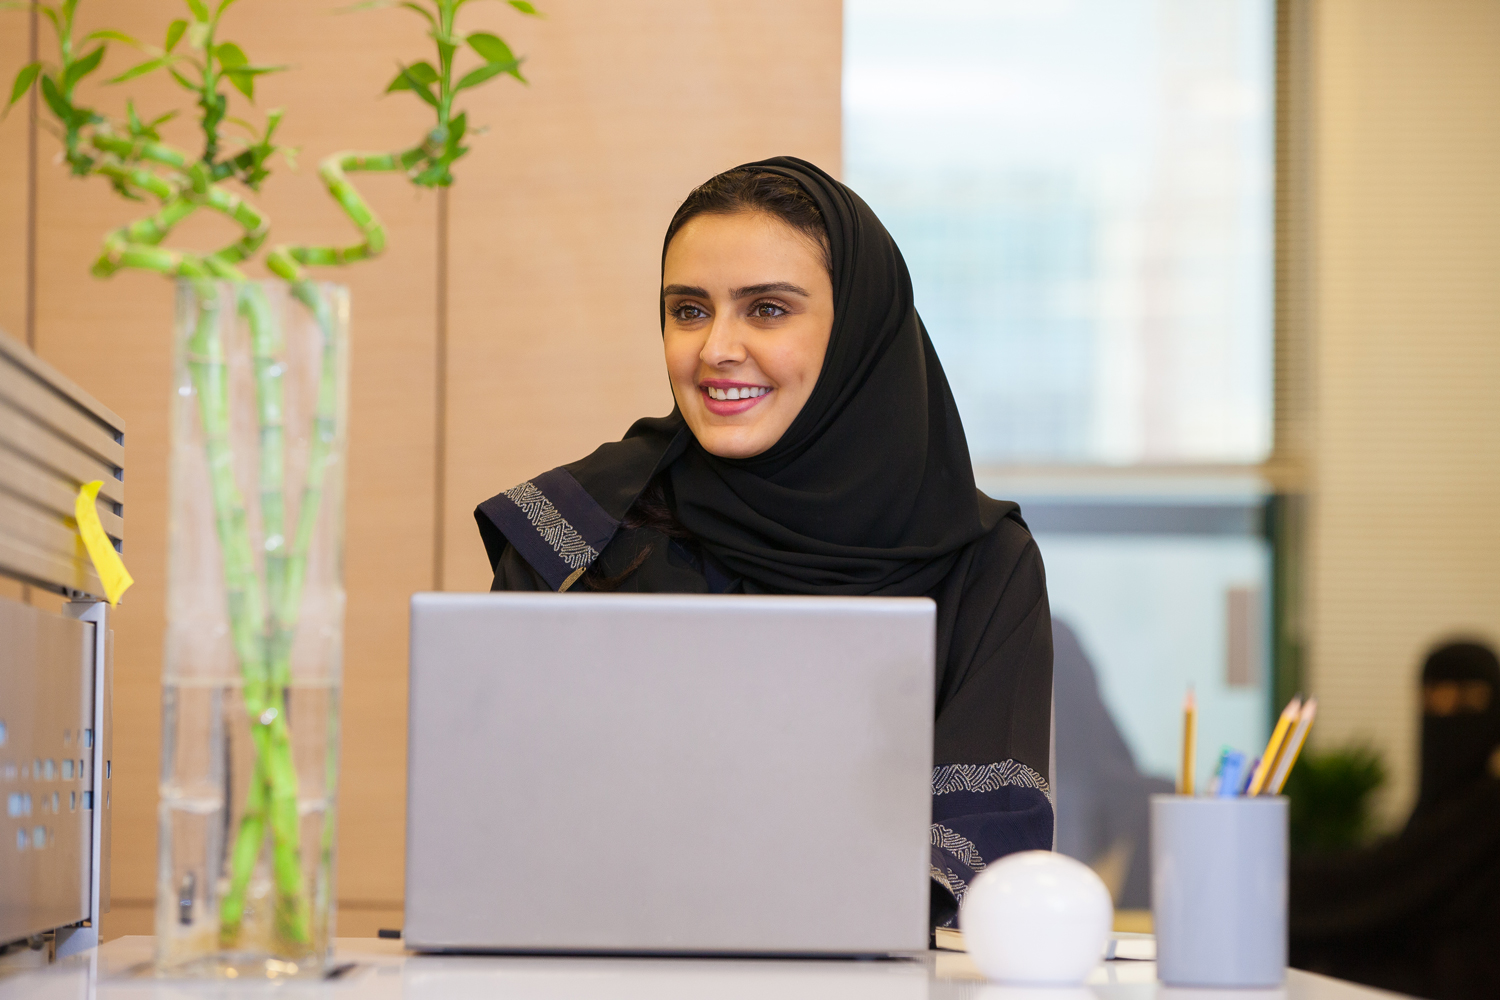 المرأة السعودية تمكين وطموح يقودانها إلى التميز المهني